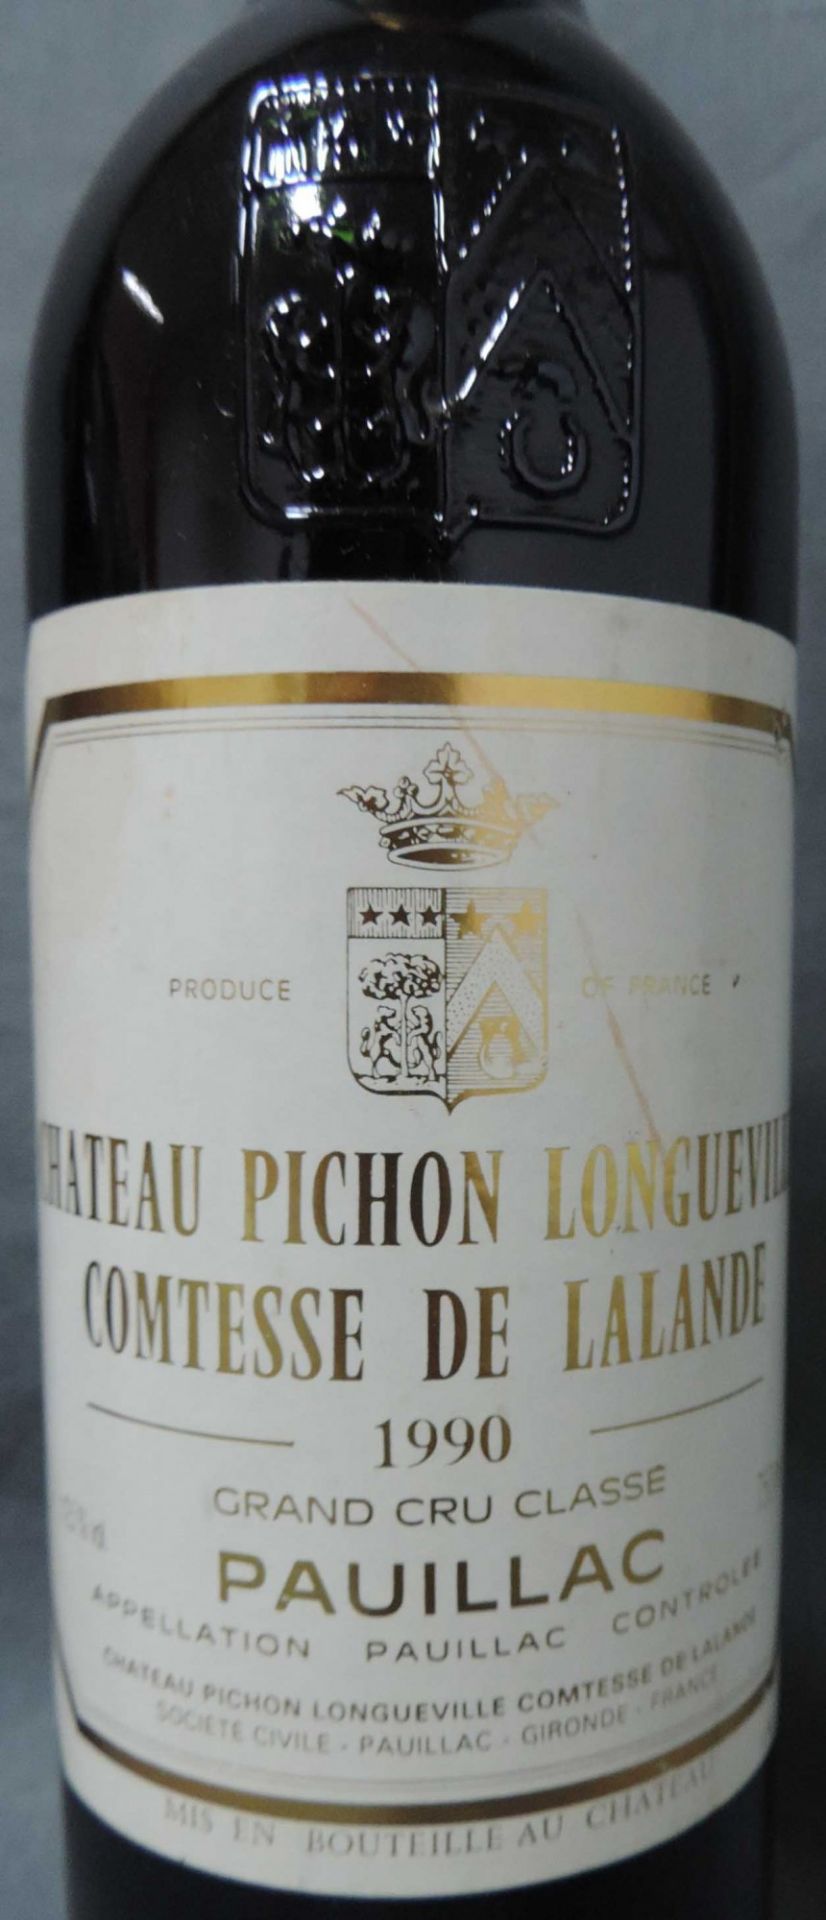 1990 Chateaux Pichon Longueville Comtesse de Lalande, Pauliac.und 1983 Pavillion Rouge du Chateau - Bild 2 aus 4